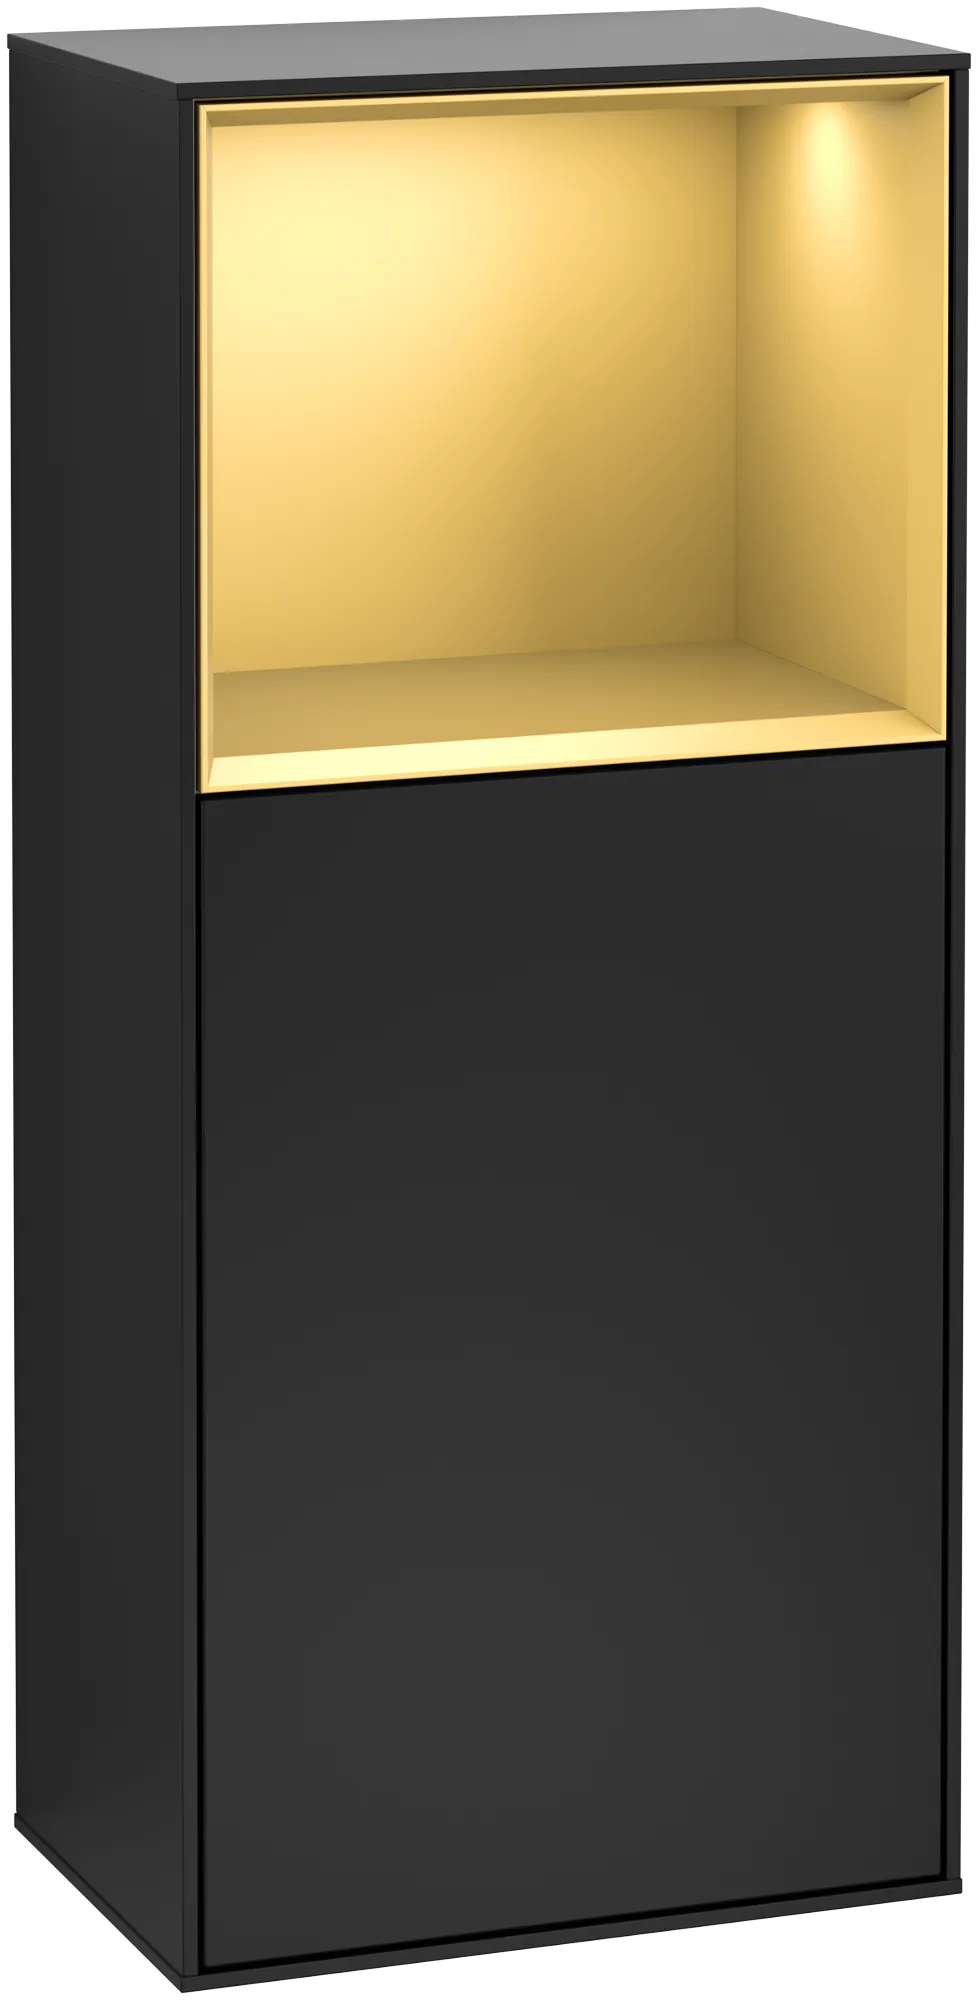 Bild von VILLEROY BOCH Finion Seitenschrank, mit Beleuchtung, 1 Tür, 418 x 936 x 270 mm, Black Matt Lacquer / Gold Matt Lacquer #G500HFPD